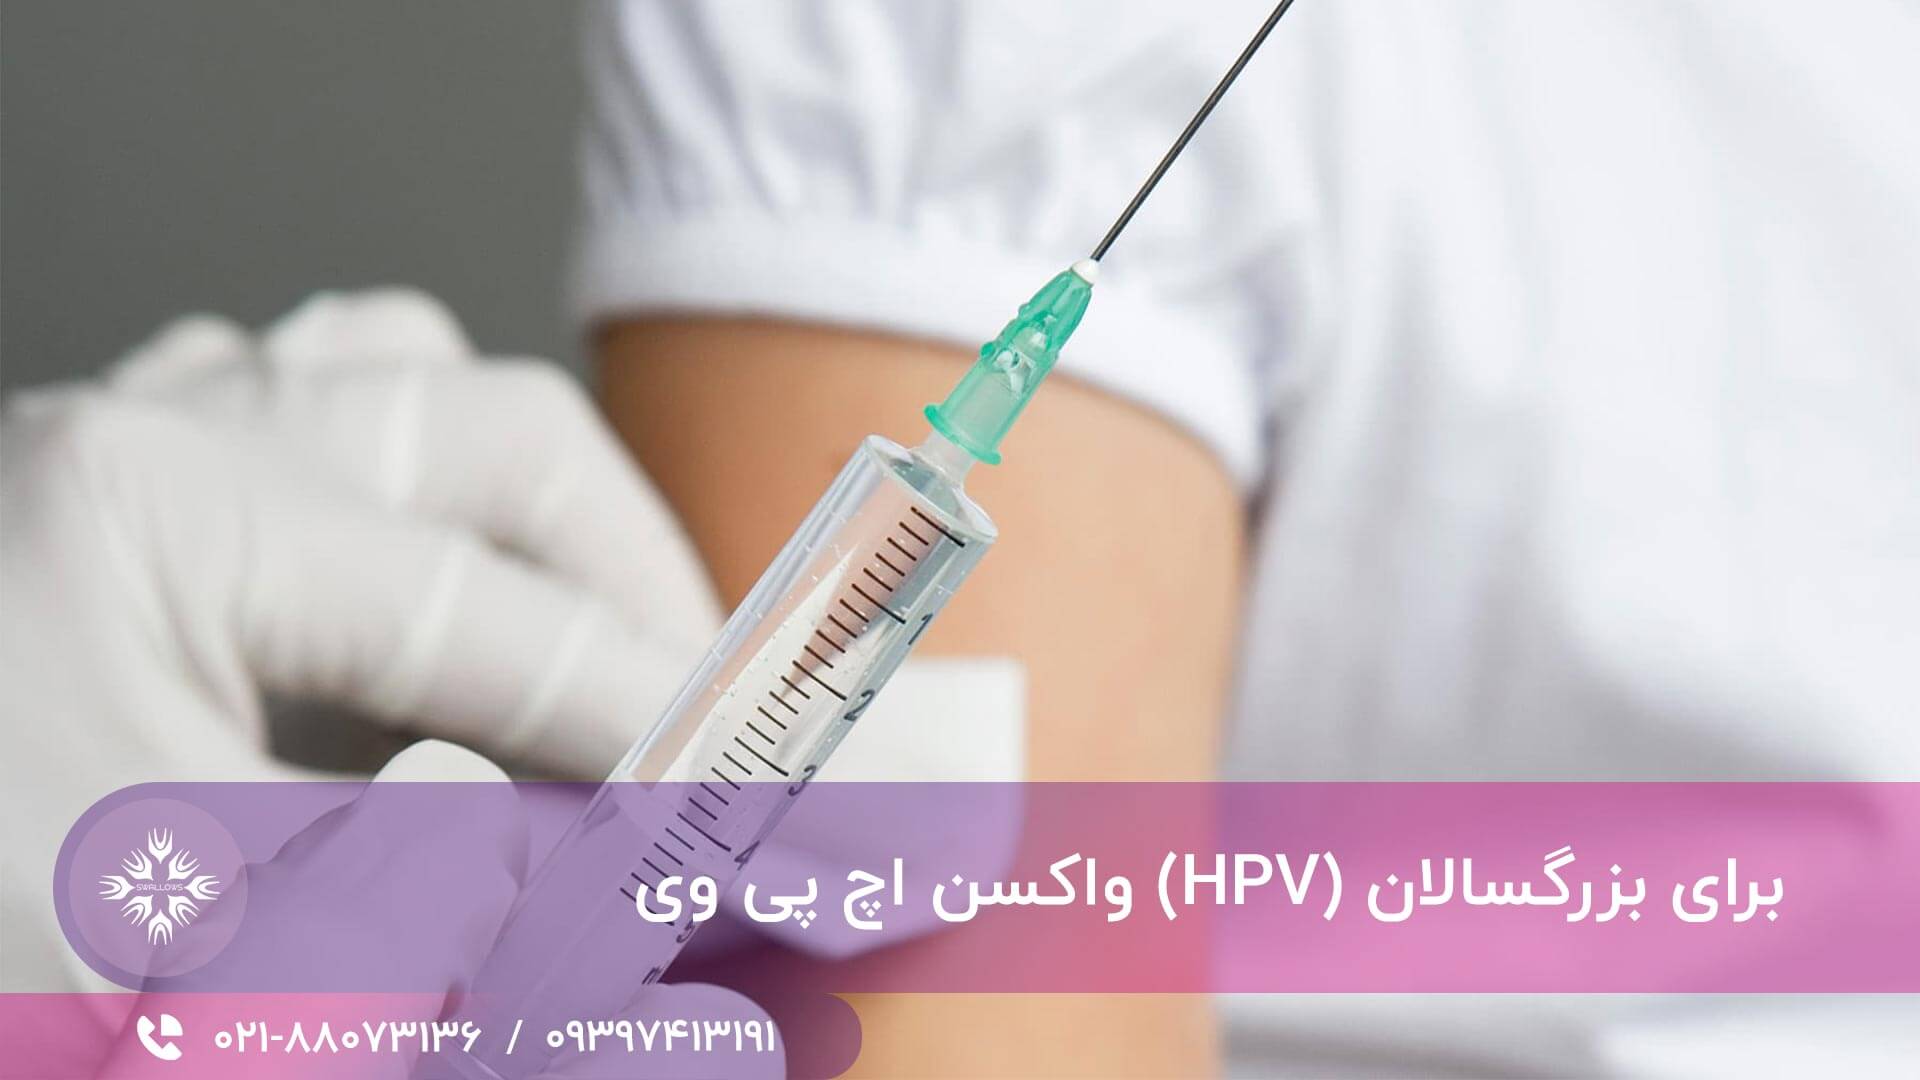 واکسن اچ پی وی (HPV) برای بزرگسالان